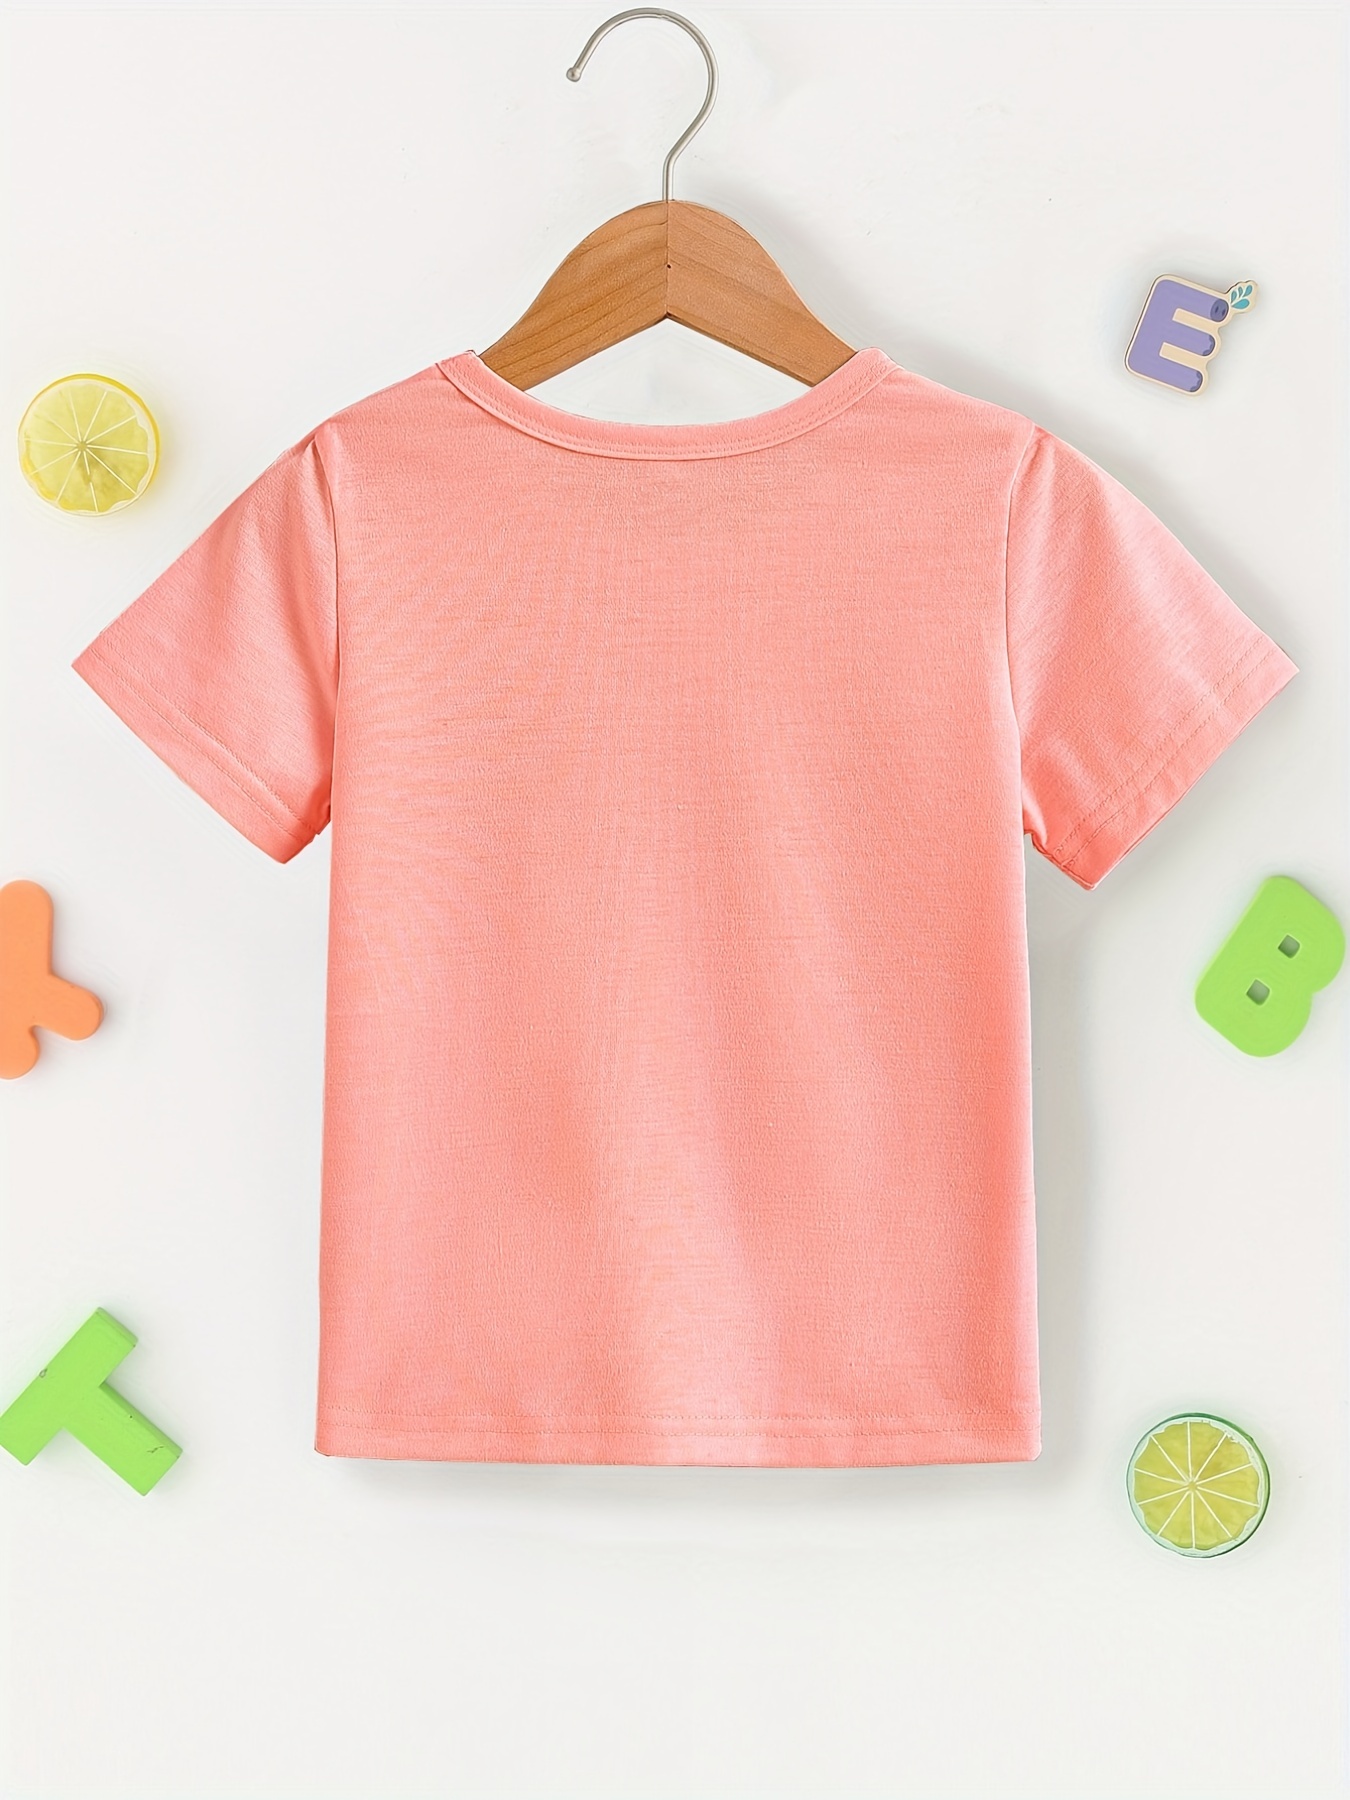 Una niña con una camiseta naranja con el número 1 en la camiseta